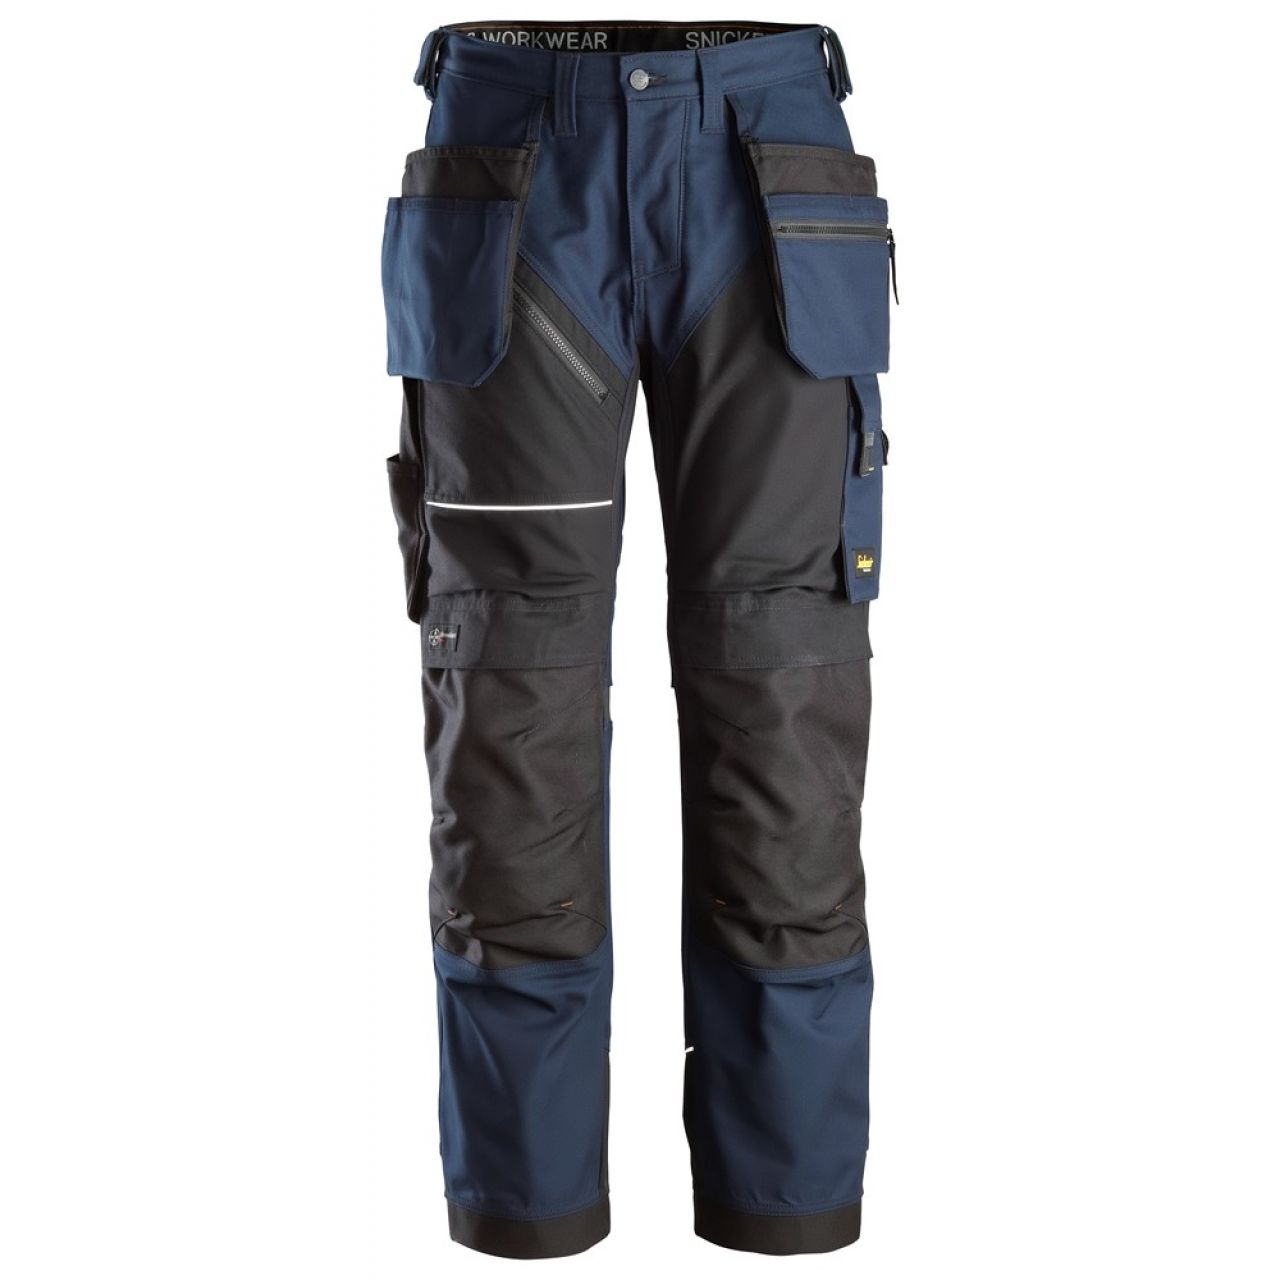 6214 Pantalones largos de trabajo con bolsillos flotantes Canvas+ RuffWork azul marino-negro talla 156